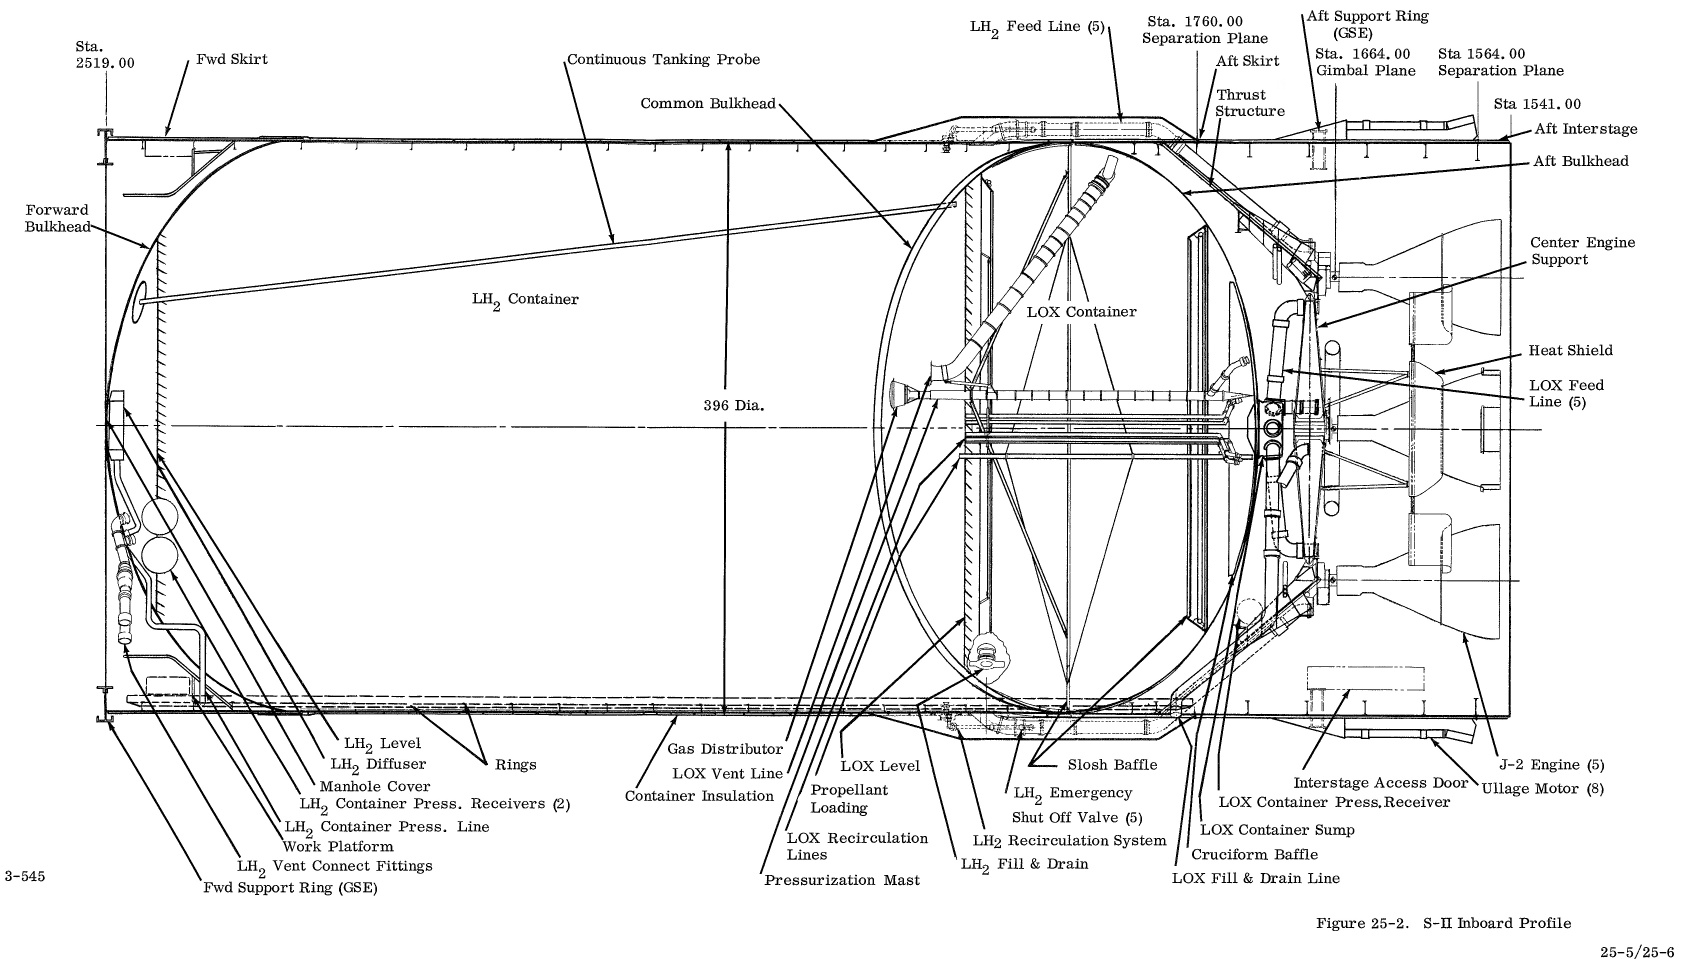 S-II inboard profile: Apollo Systems Description Vol. II 1964, p. 25-5, Courtesy of NASA